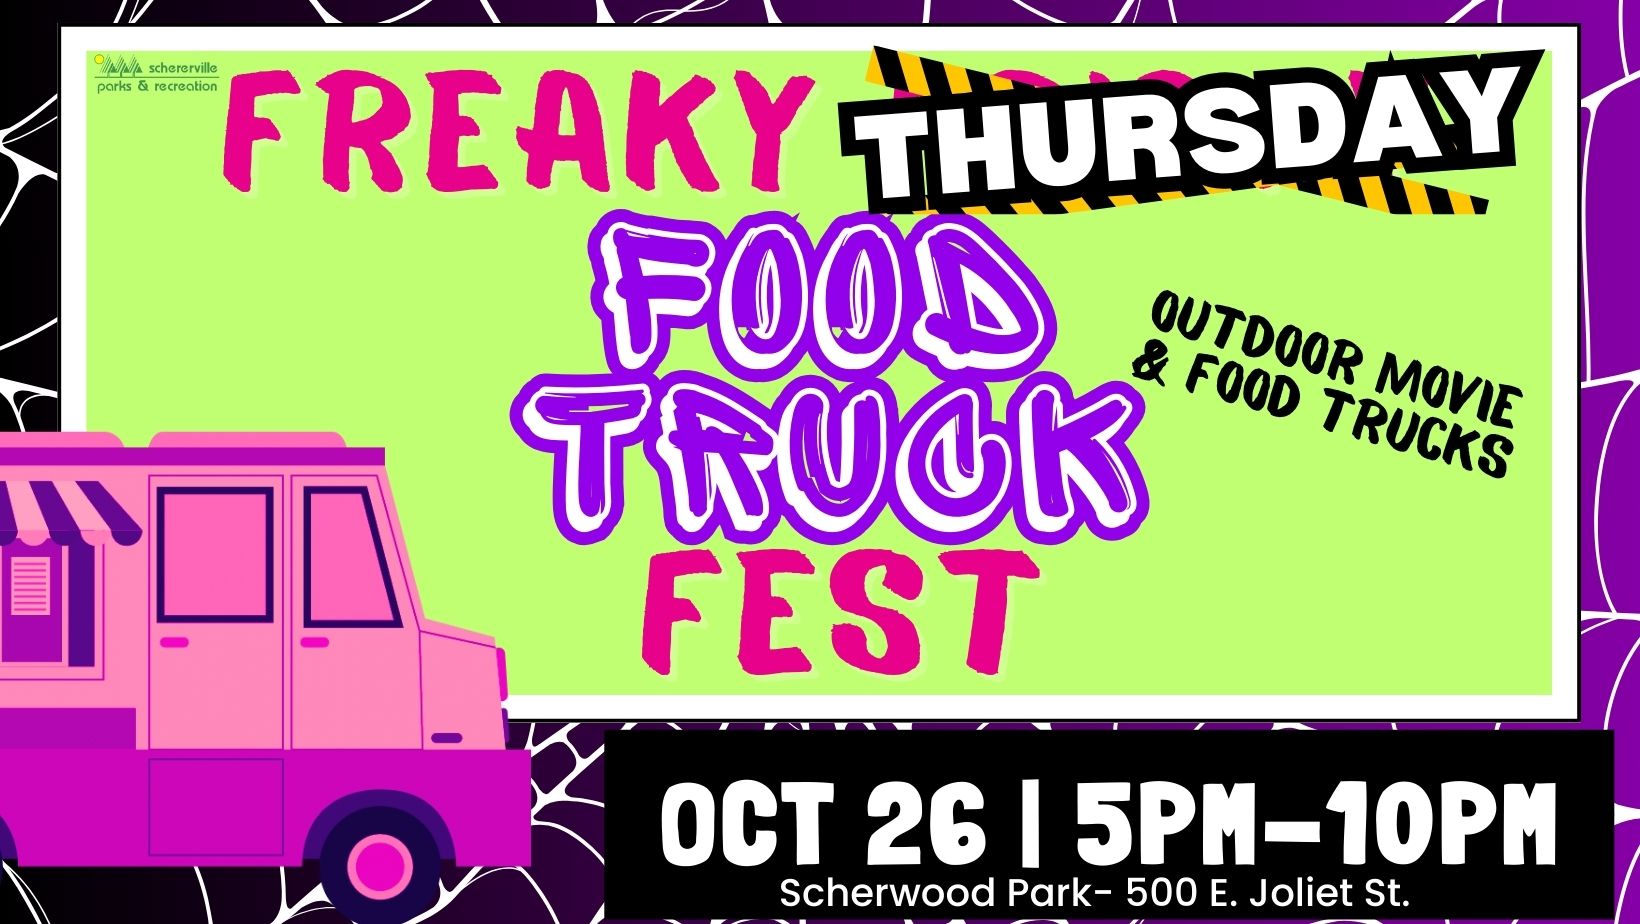 Schererville's Freaky THURSDSAY Food Truck Fest cover image